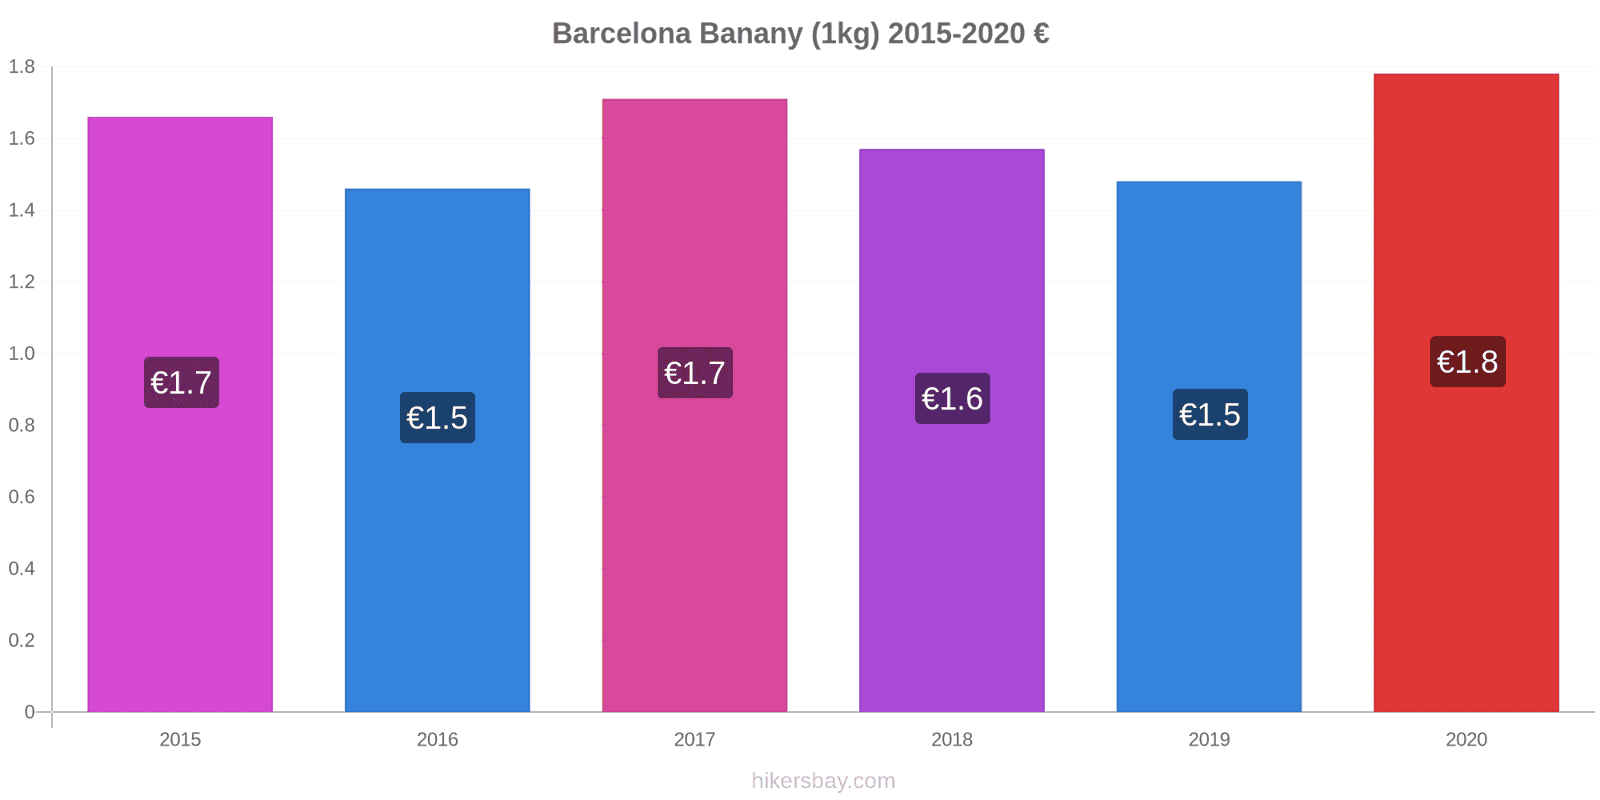 Barcelona zmiany cen Banany (1kg) hikersbay.com